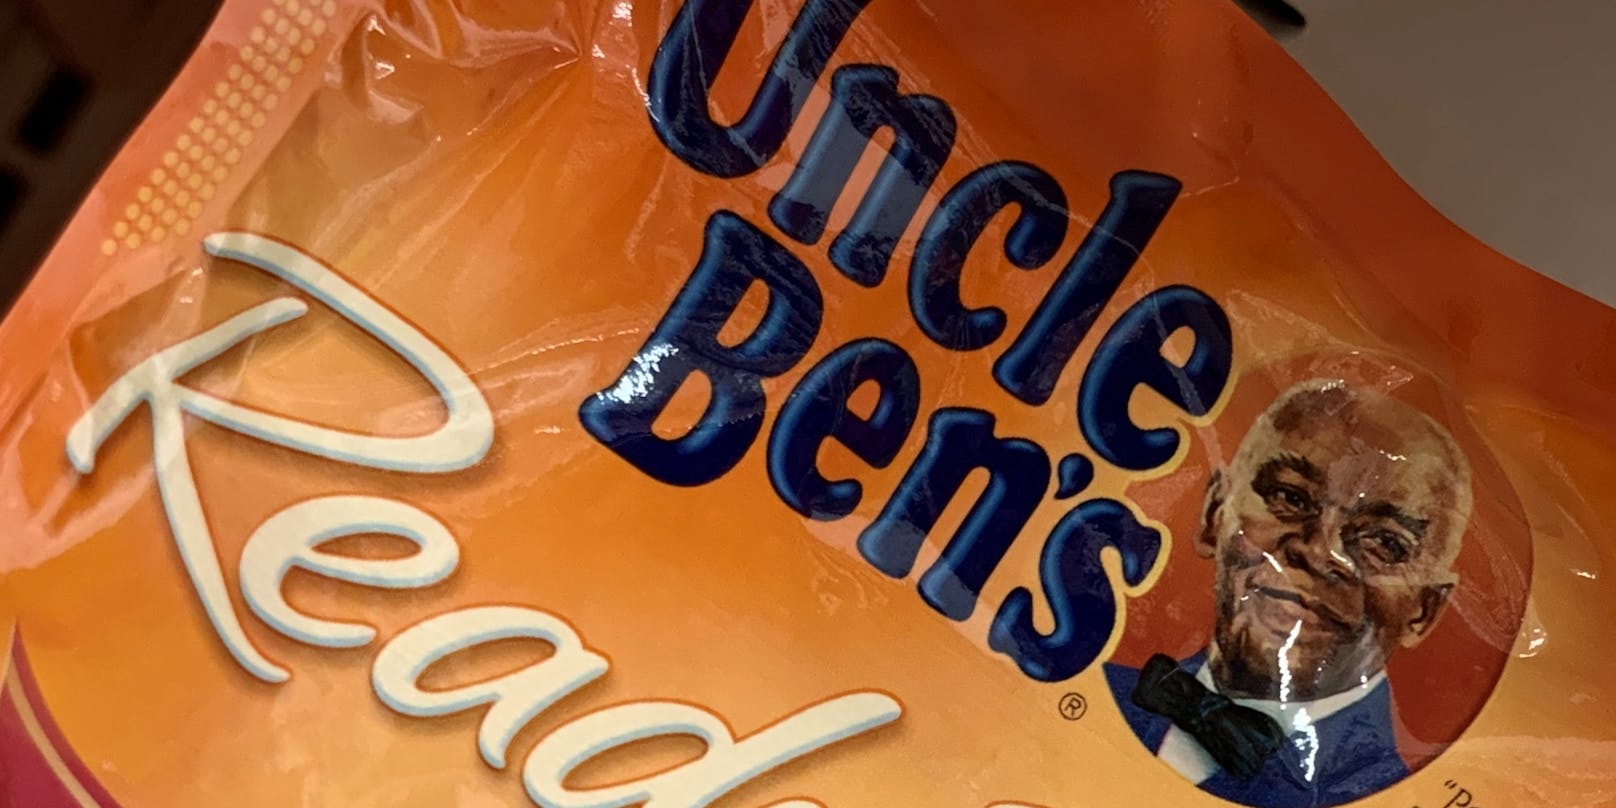 Nach Rassismus-Vorwürfen hat "Uncle Ben's" jetzt sein Logo und seinen Namen geändert.